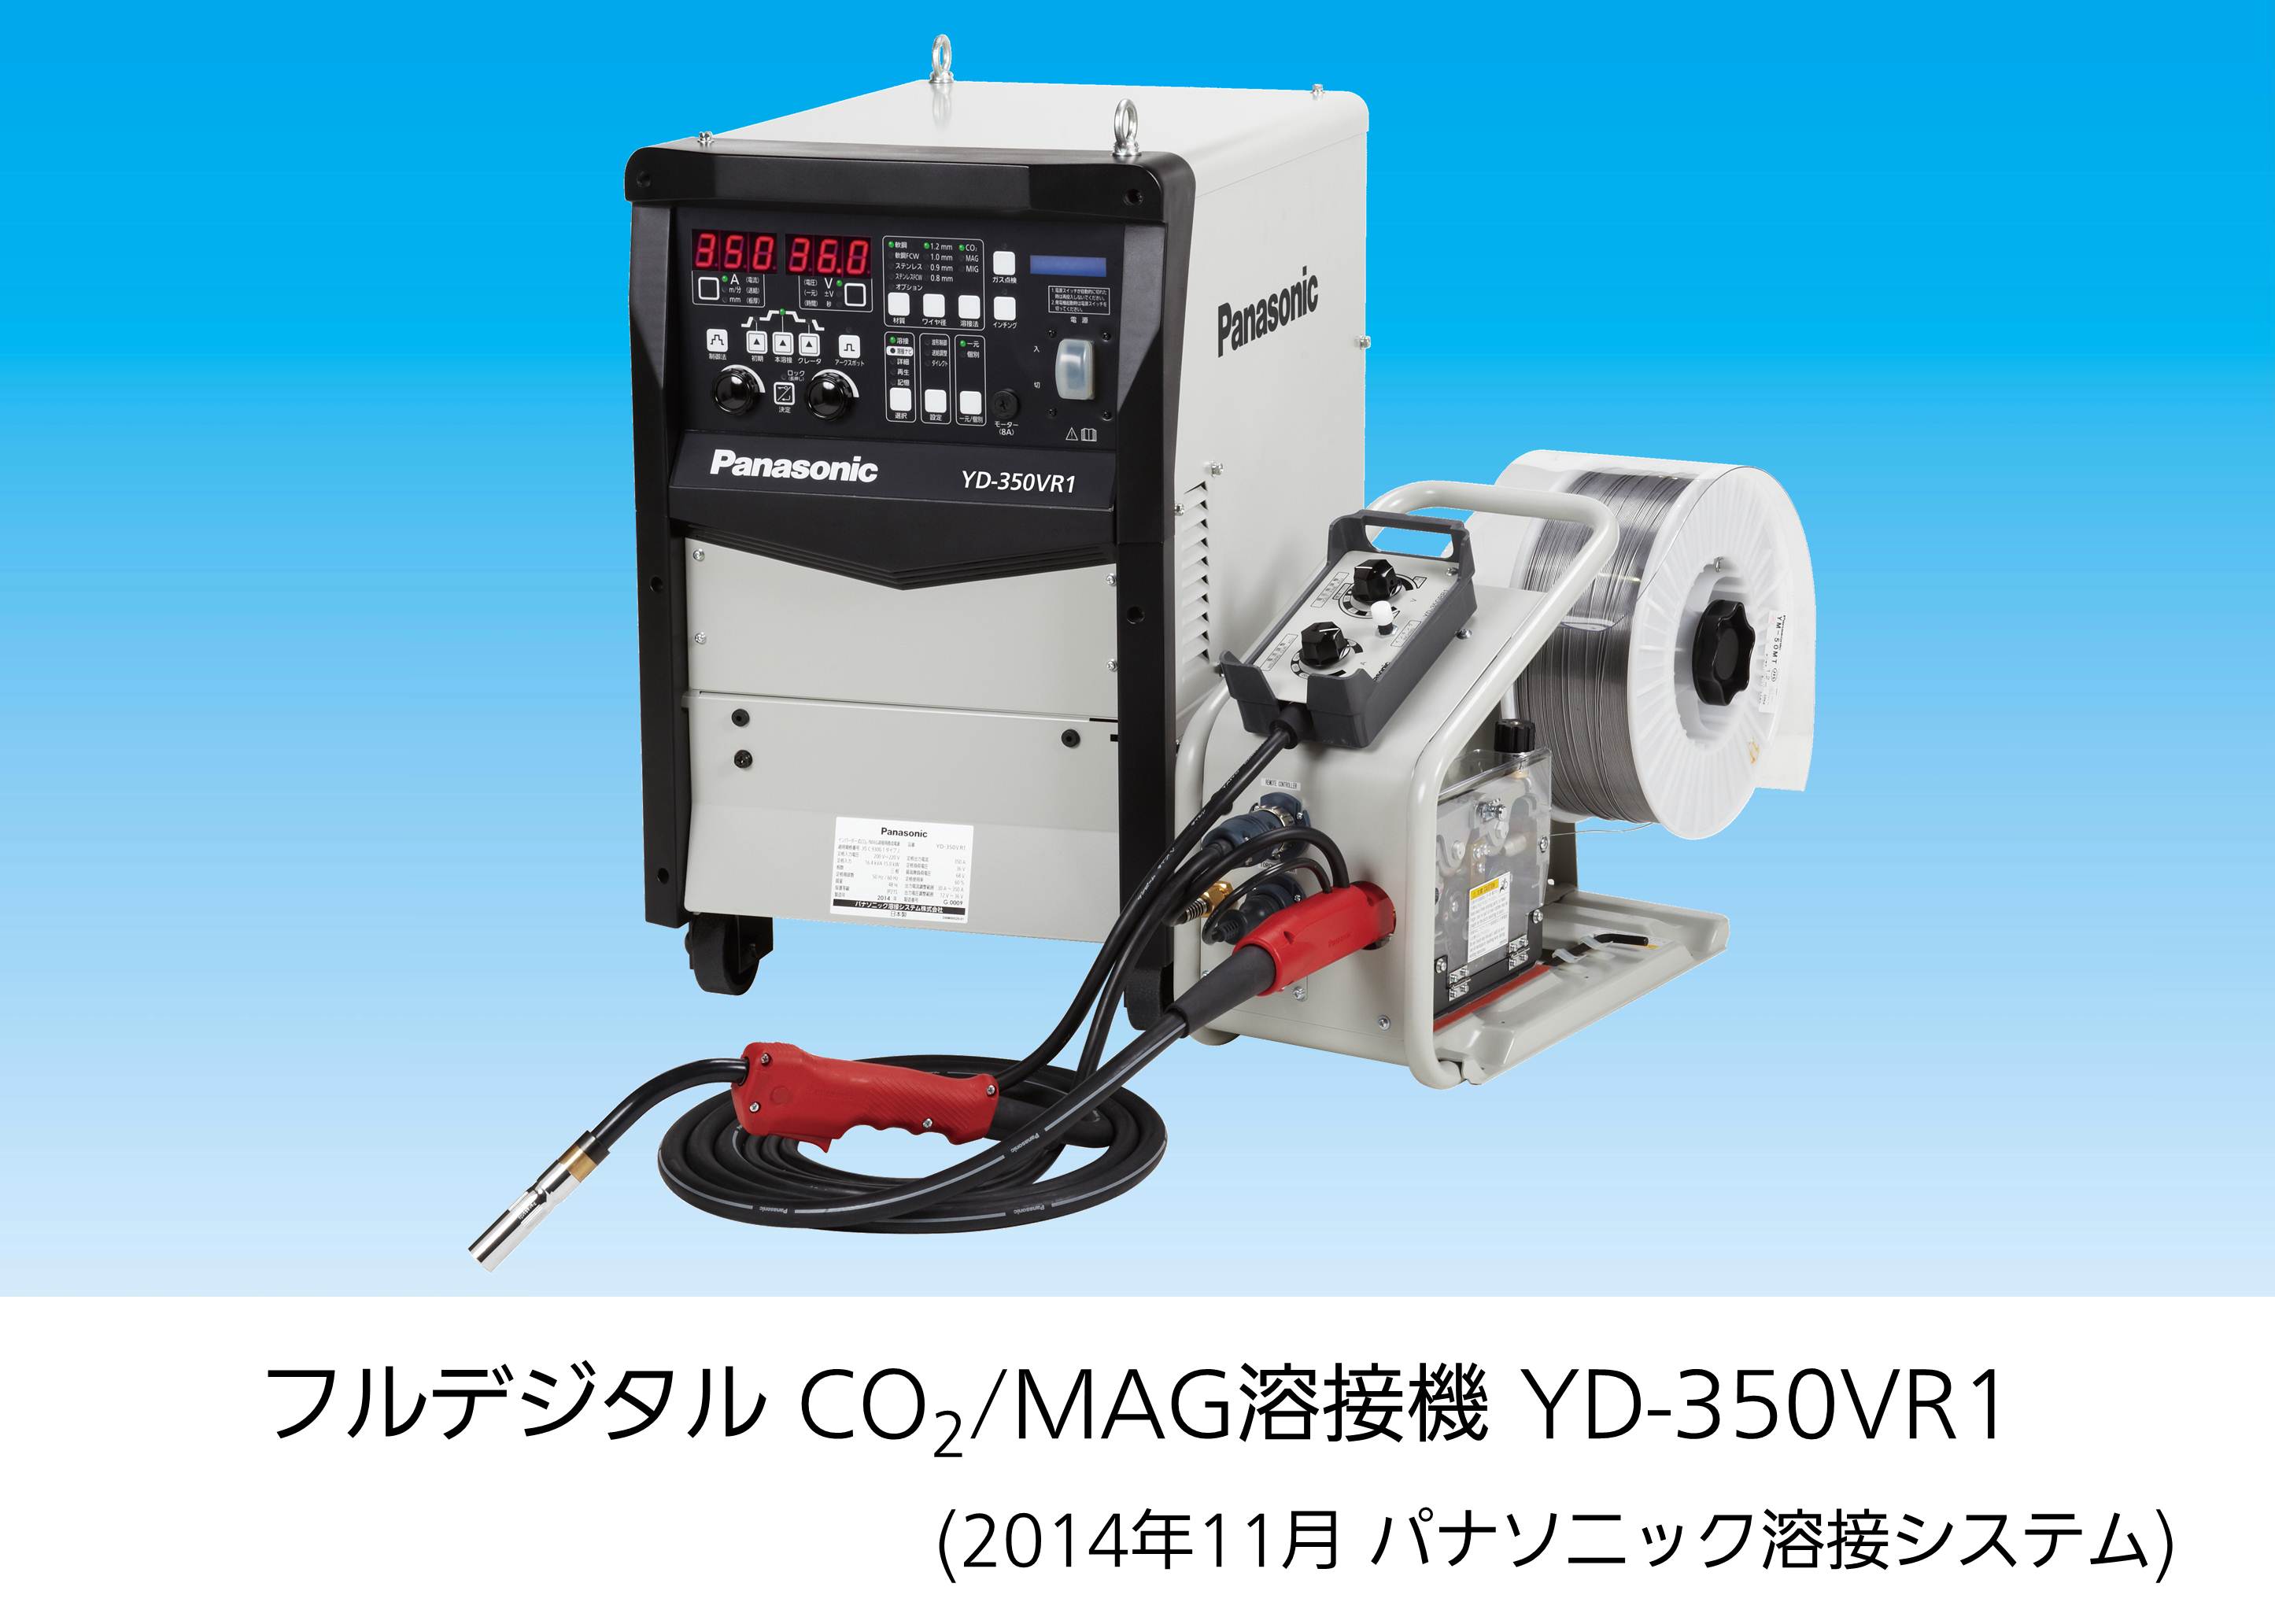 フルデジタル CO2/MAG溶接機 YD-350VR1 発売